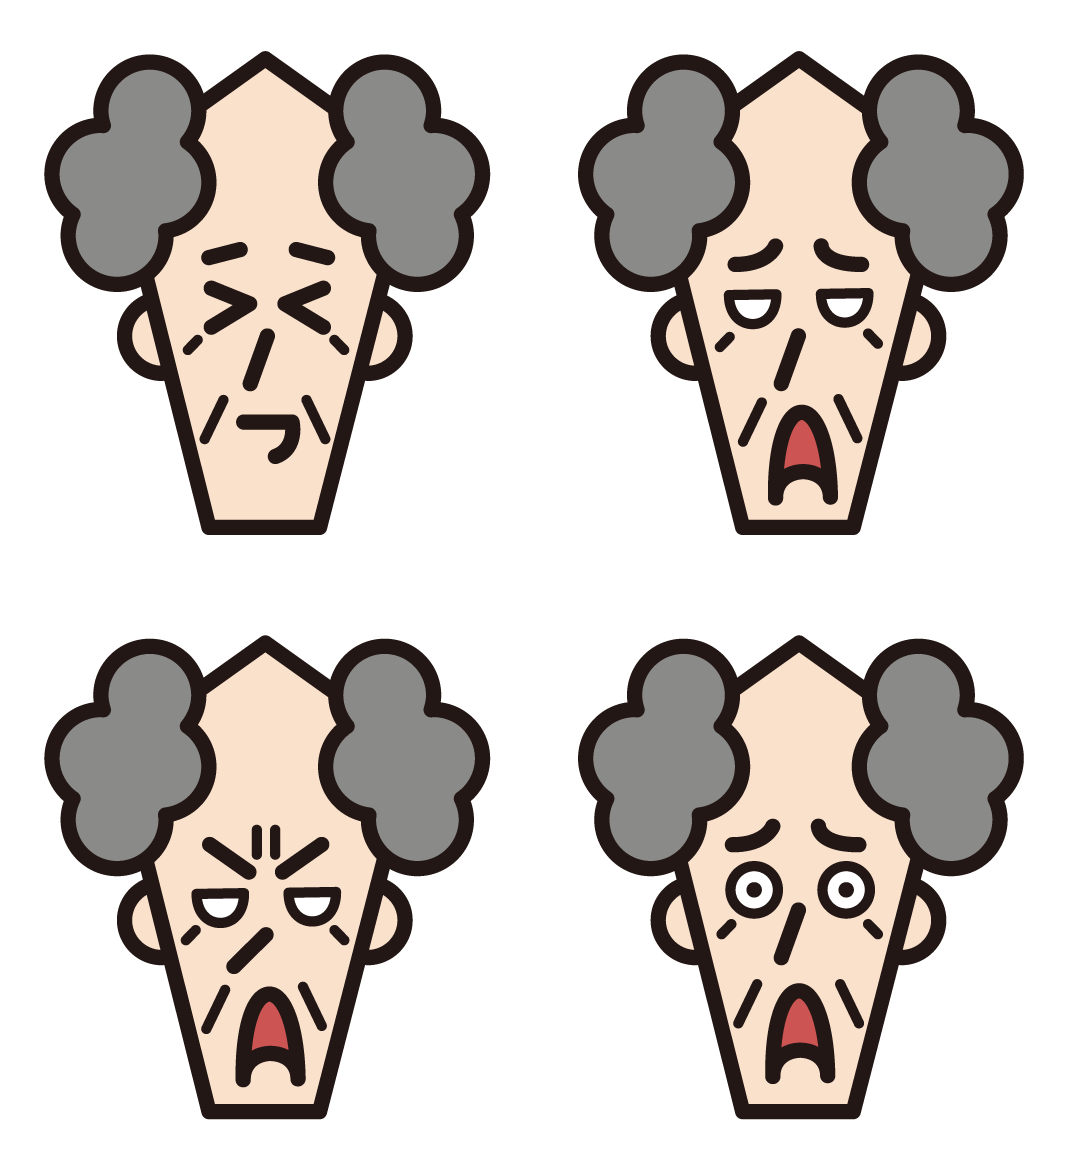 할아버지의 다양한 얼굴 표정 2 가지 삽화 (흐트러진 헤어 스타일)